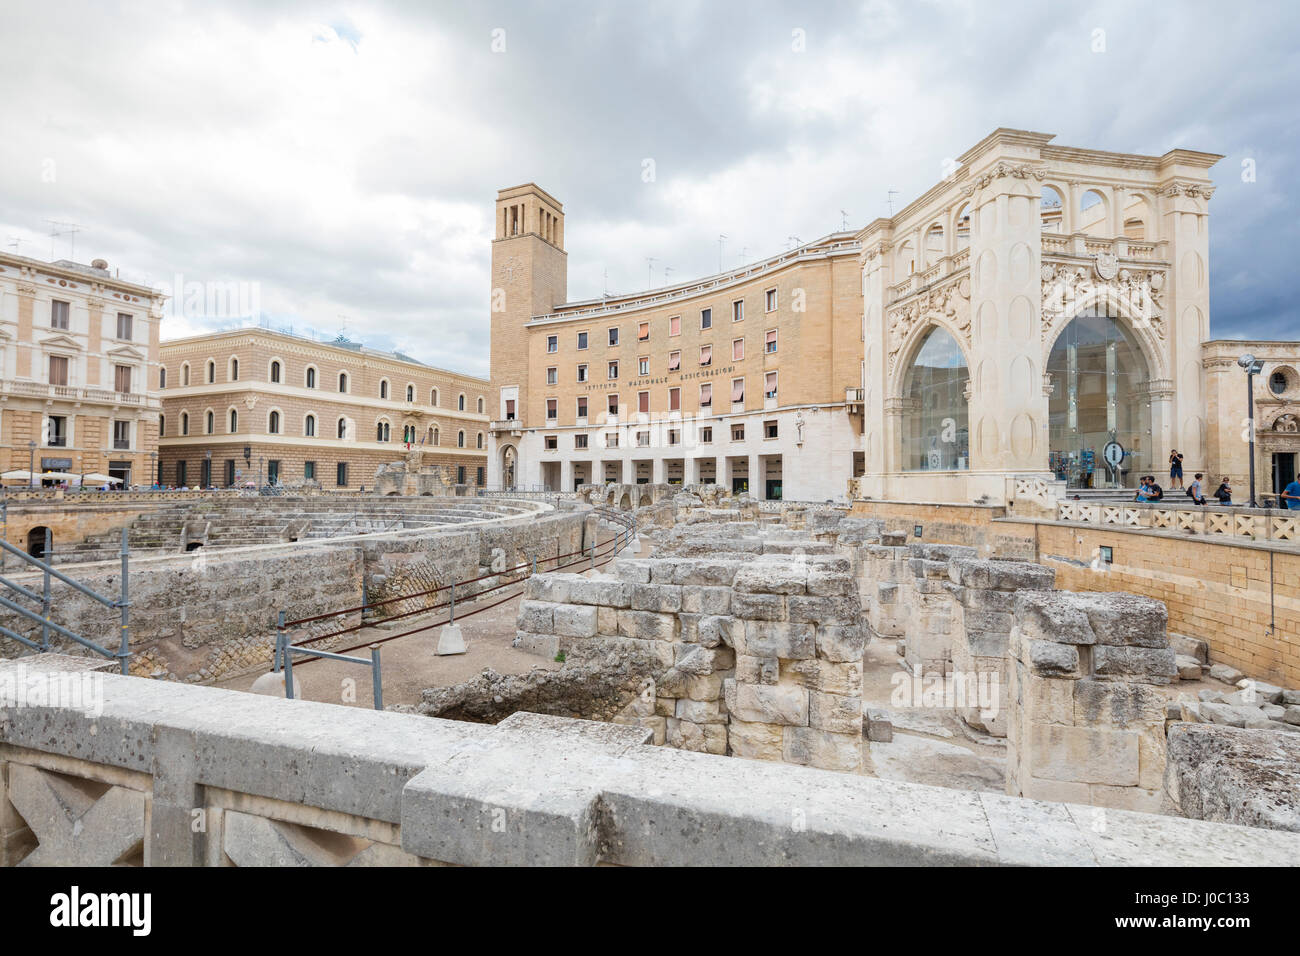 Le antiche rovine romane ed edifici storici nel centro storico di Lecce, Puglia, Italia Foto Stock